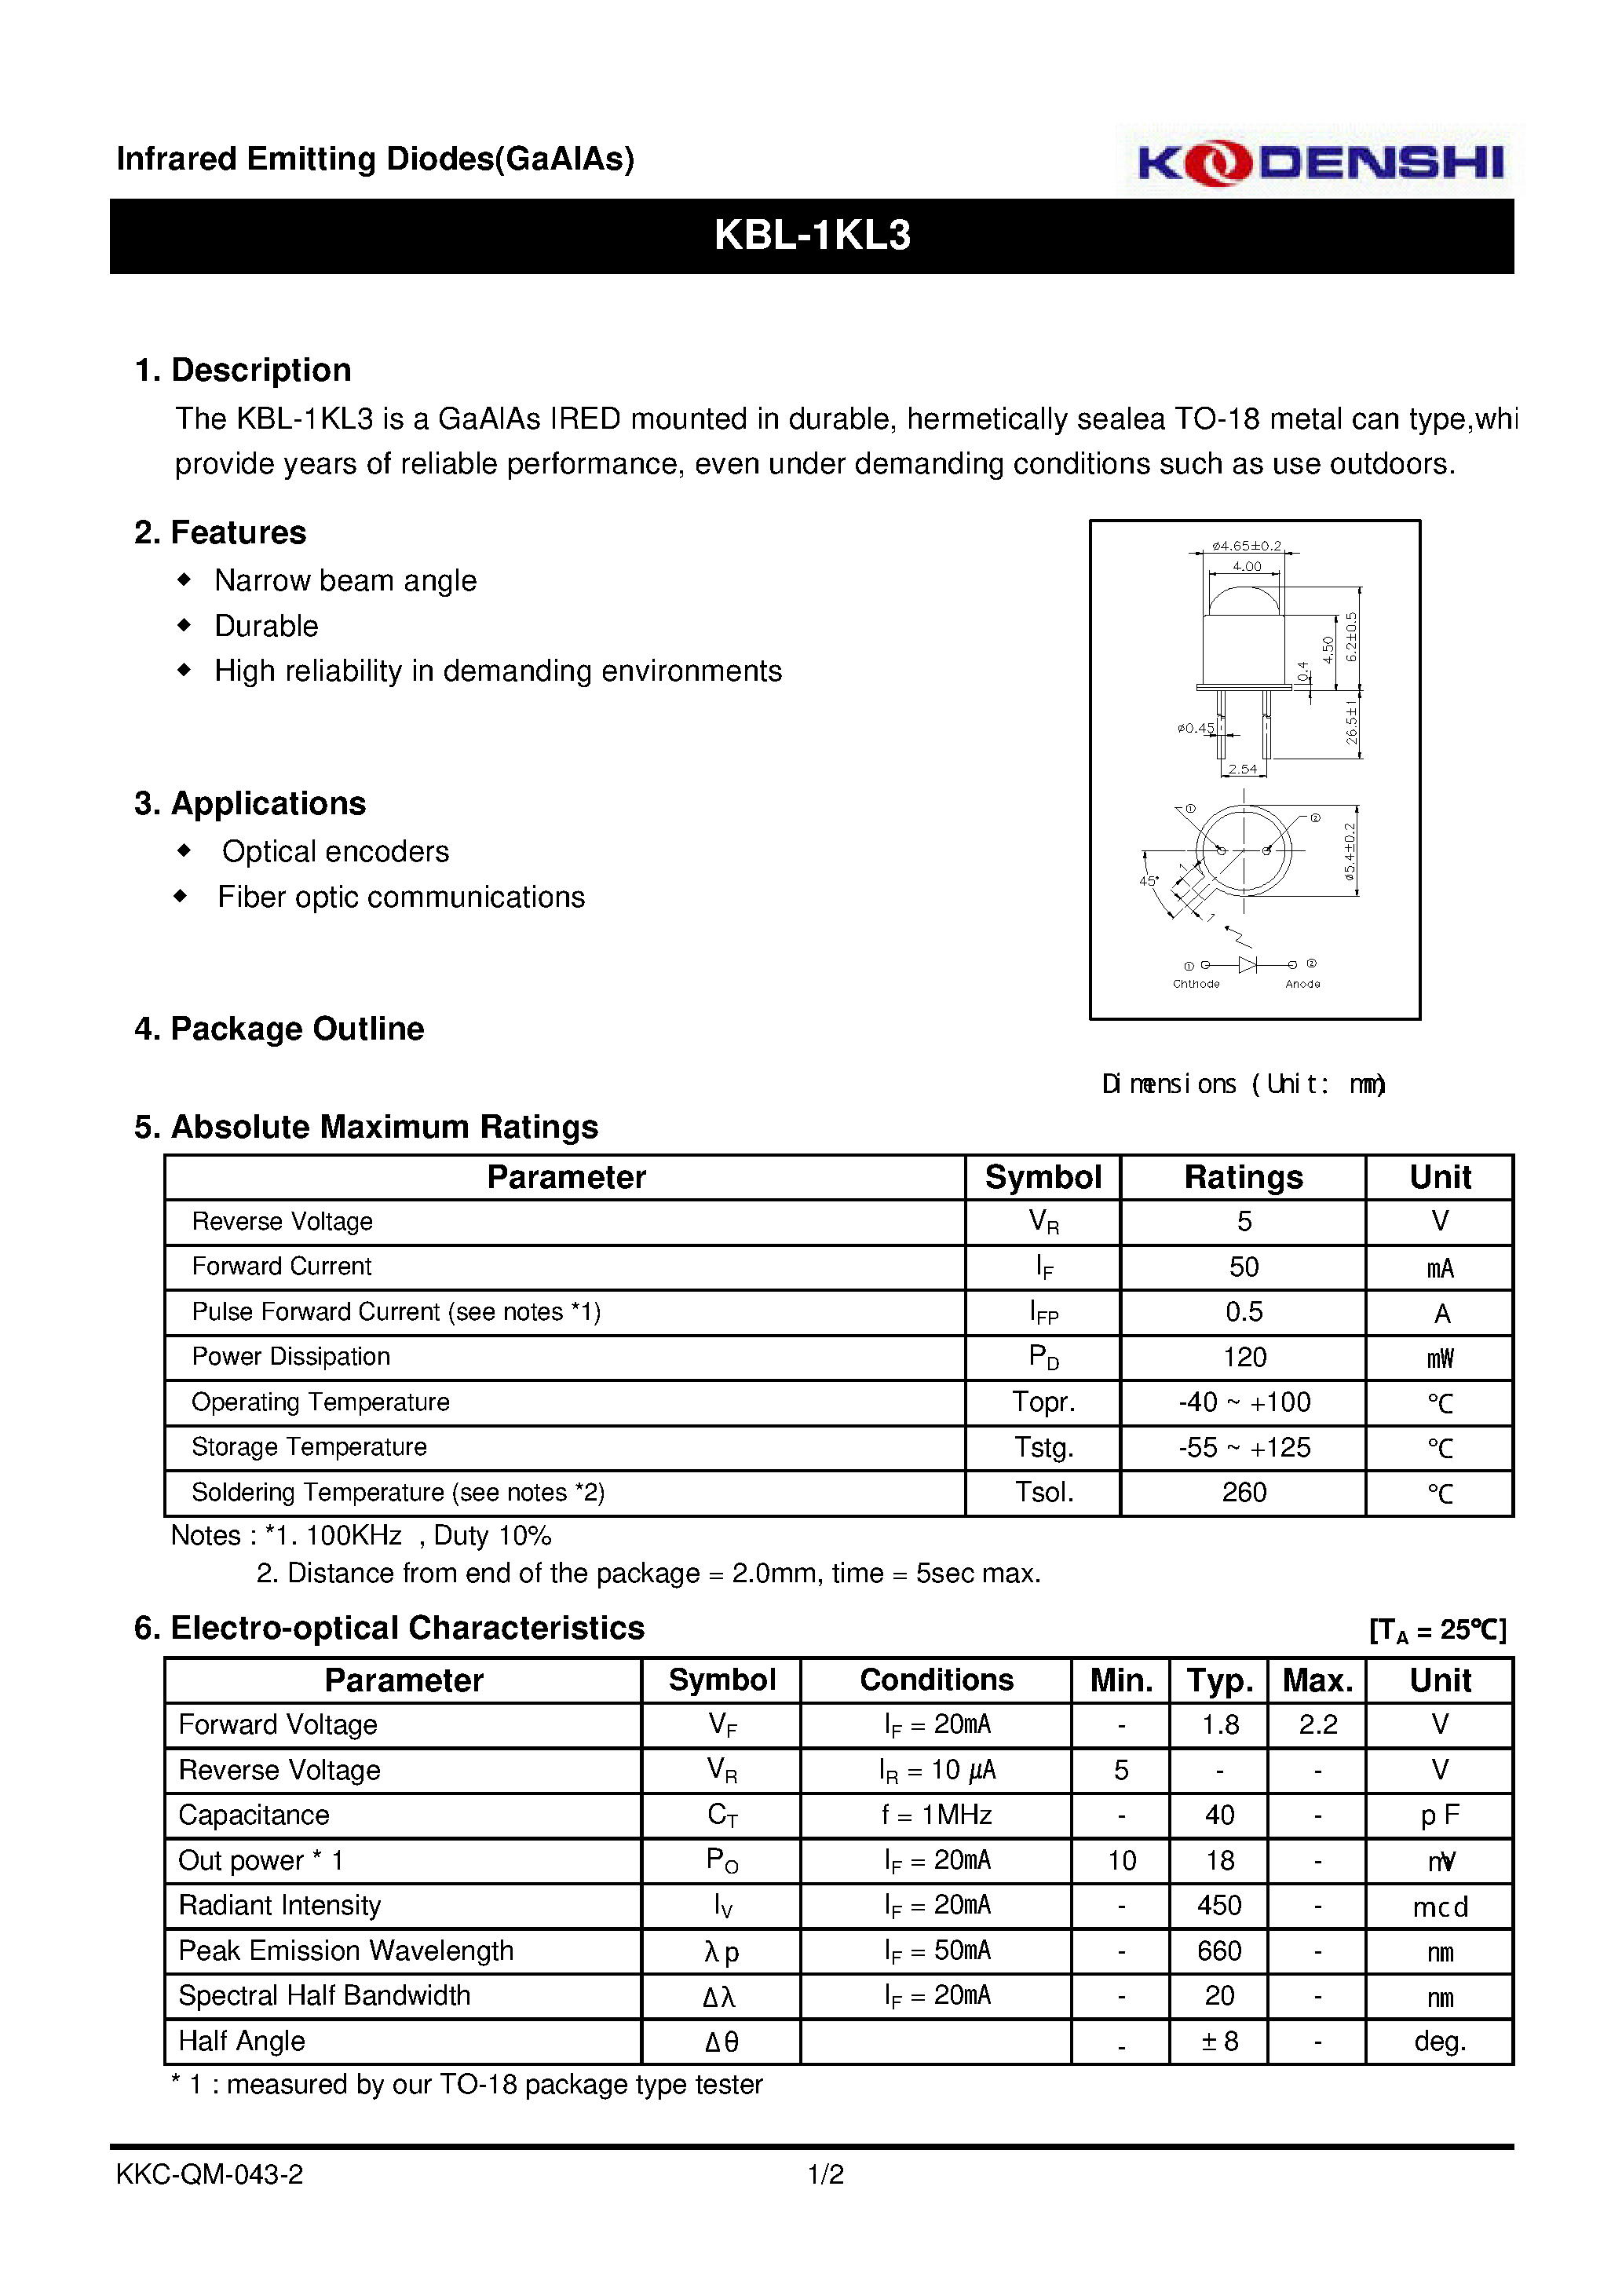 Datasheet KBL-1KL3 - Infrared Emitting Diodes(GaAIAs) page 1